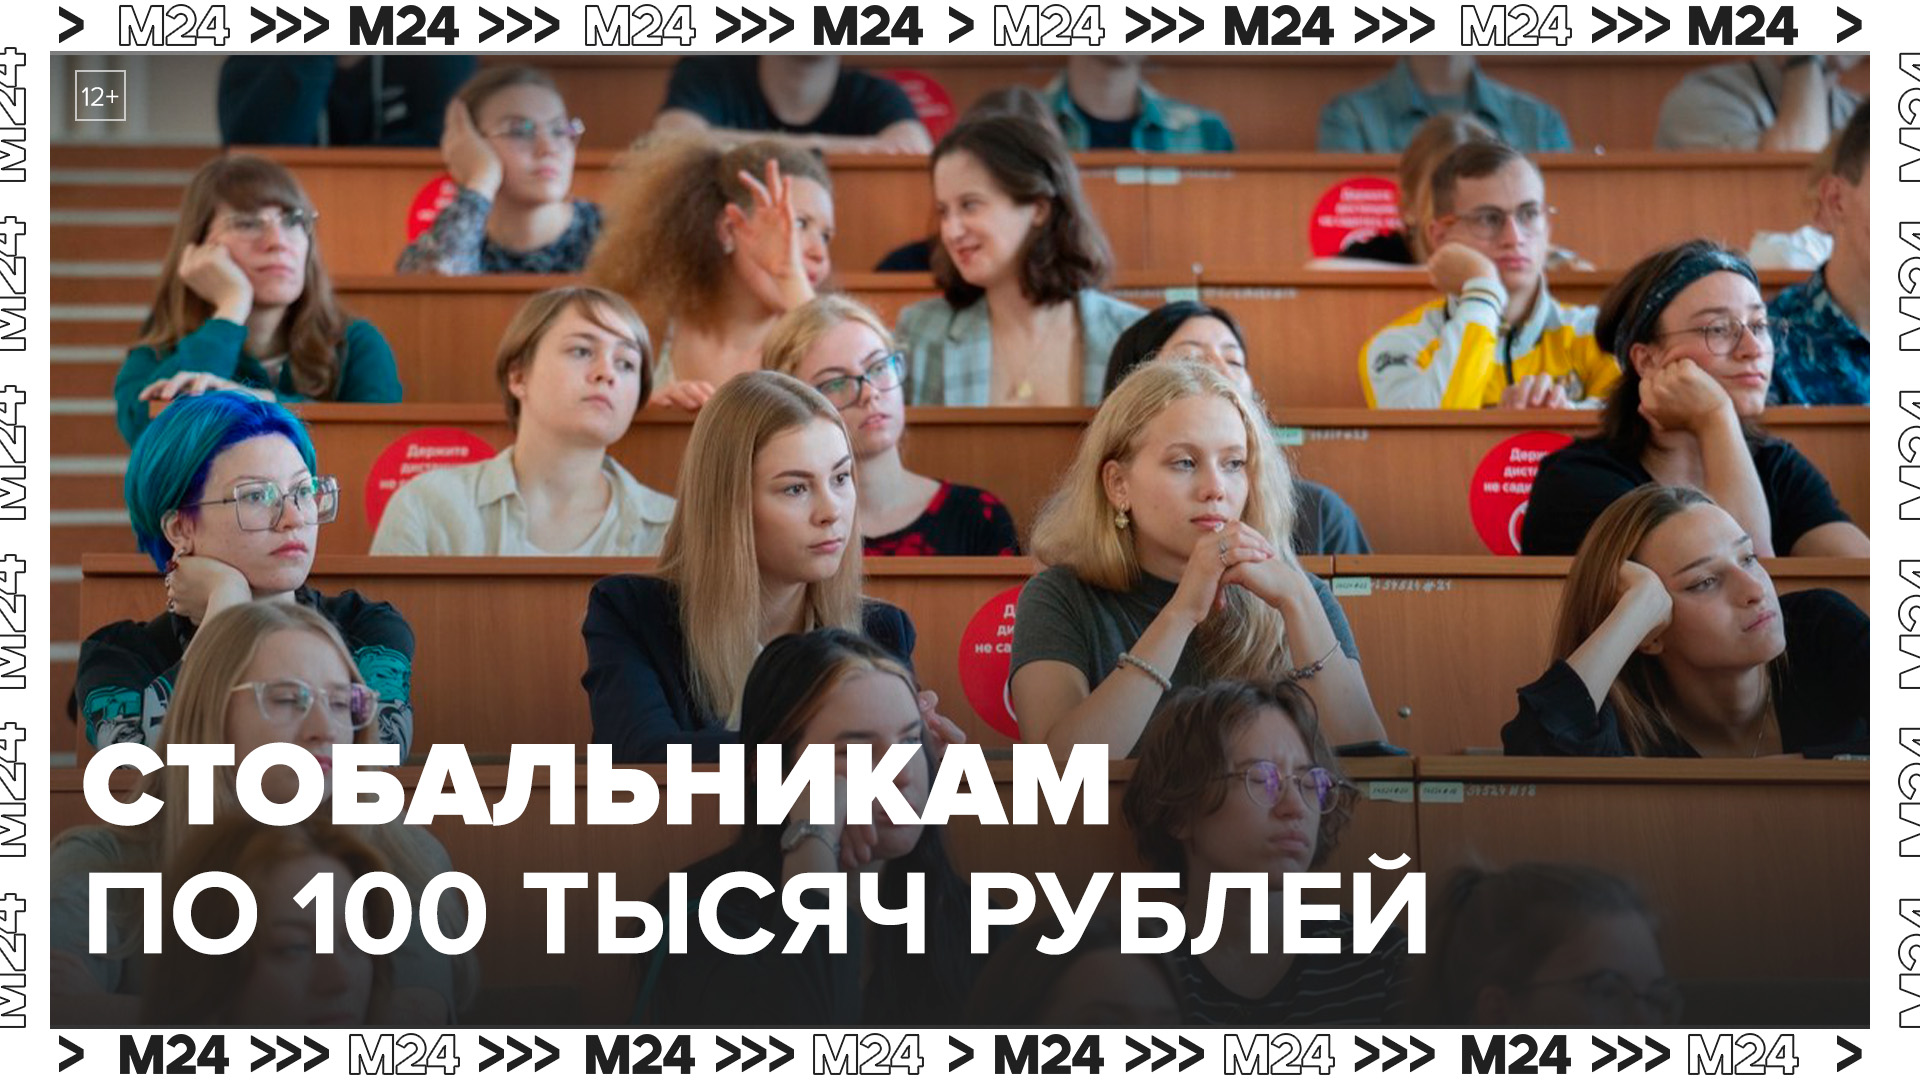 МФТИ заплатит 100 тыс рублей каждому поступившему, кто набрал 100 баллов на ЕГЭ - Москва 24